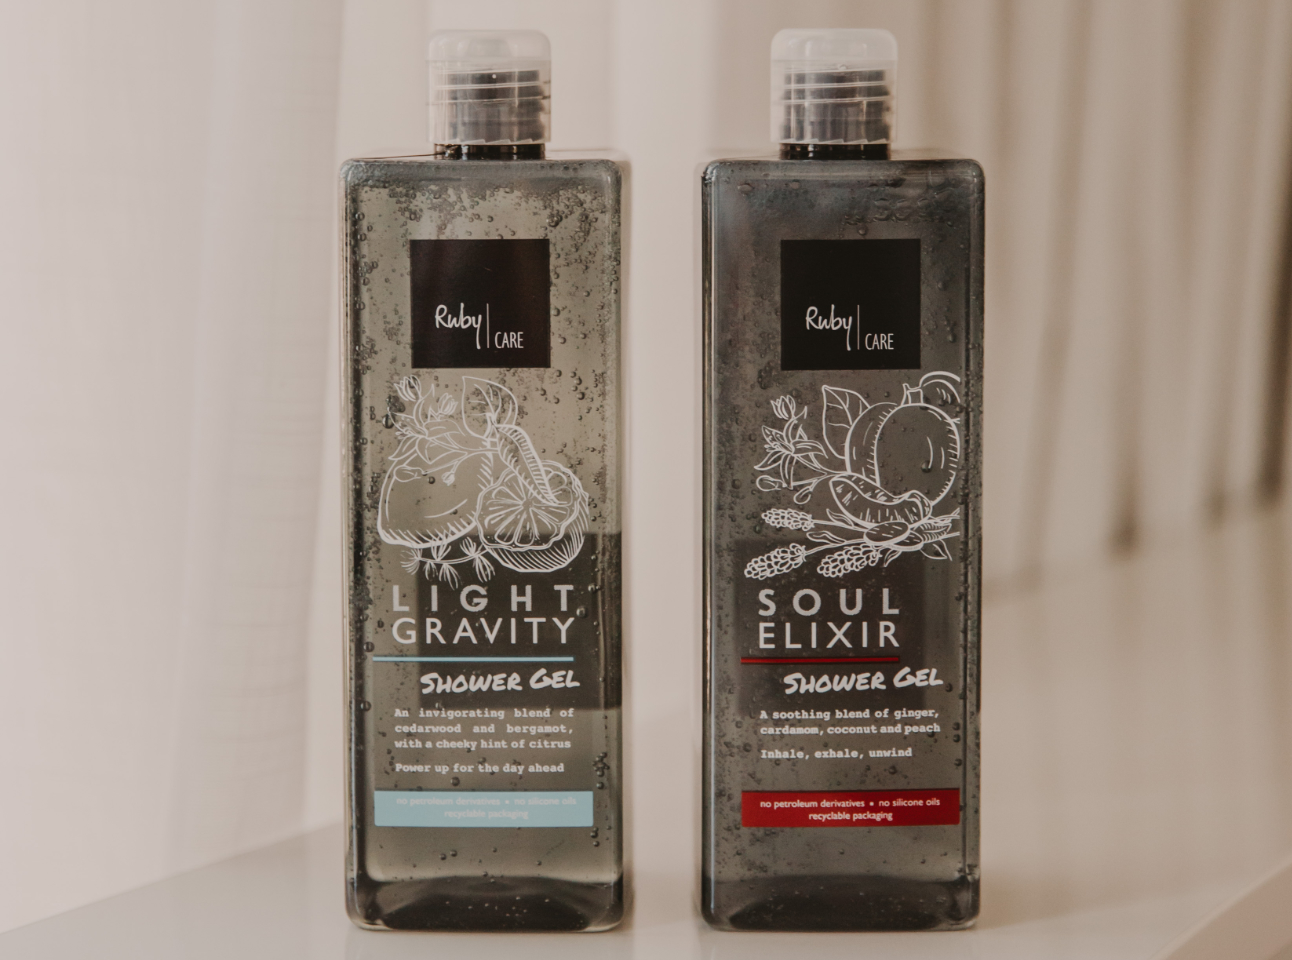 Soul Elixir Shower Gel